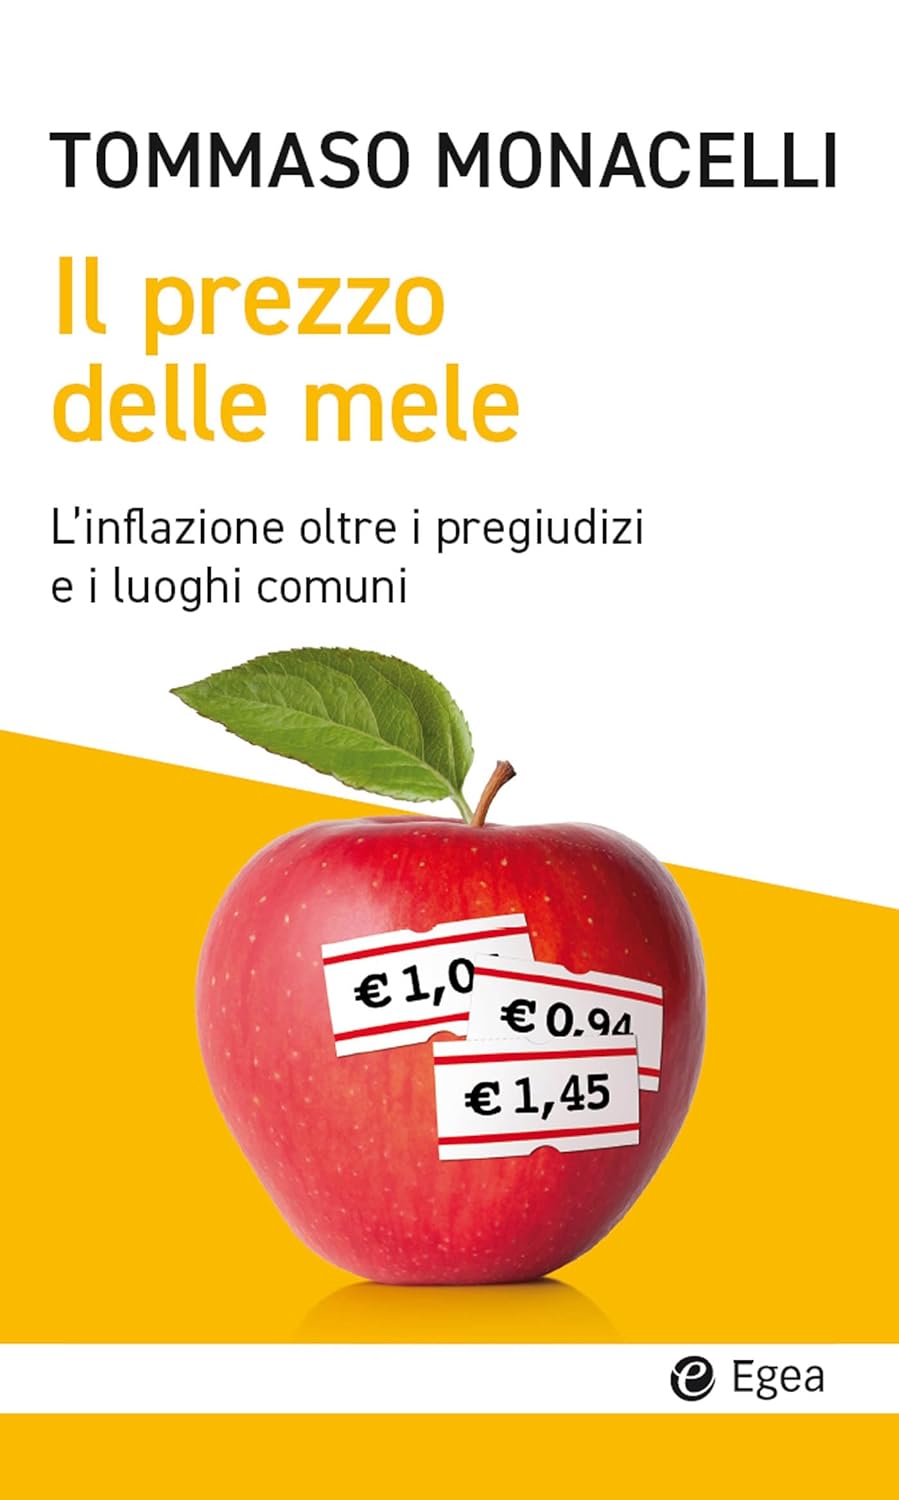 Tommaso Monacelli – Il prezzo delle mele